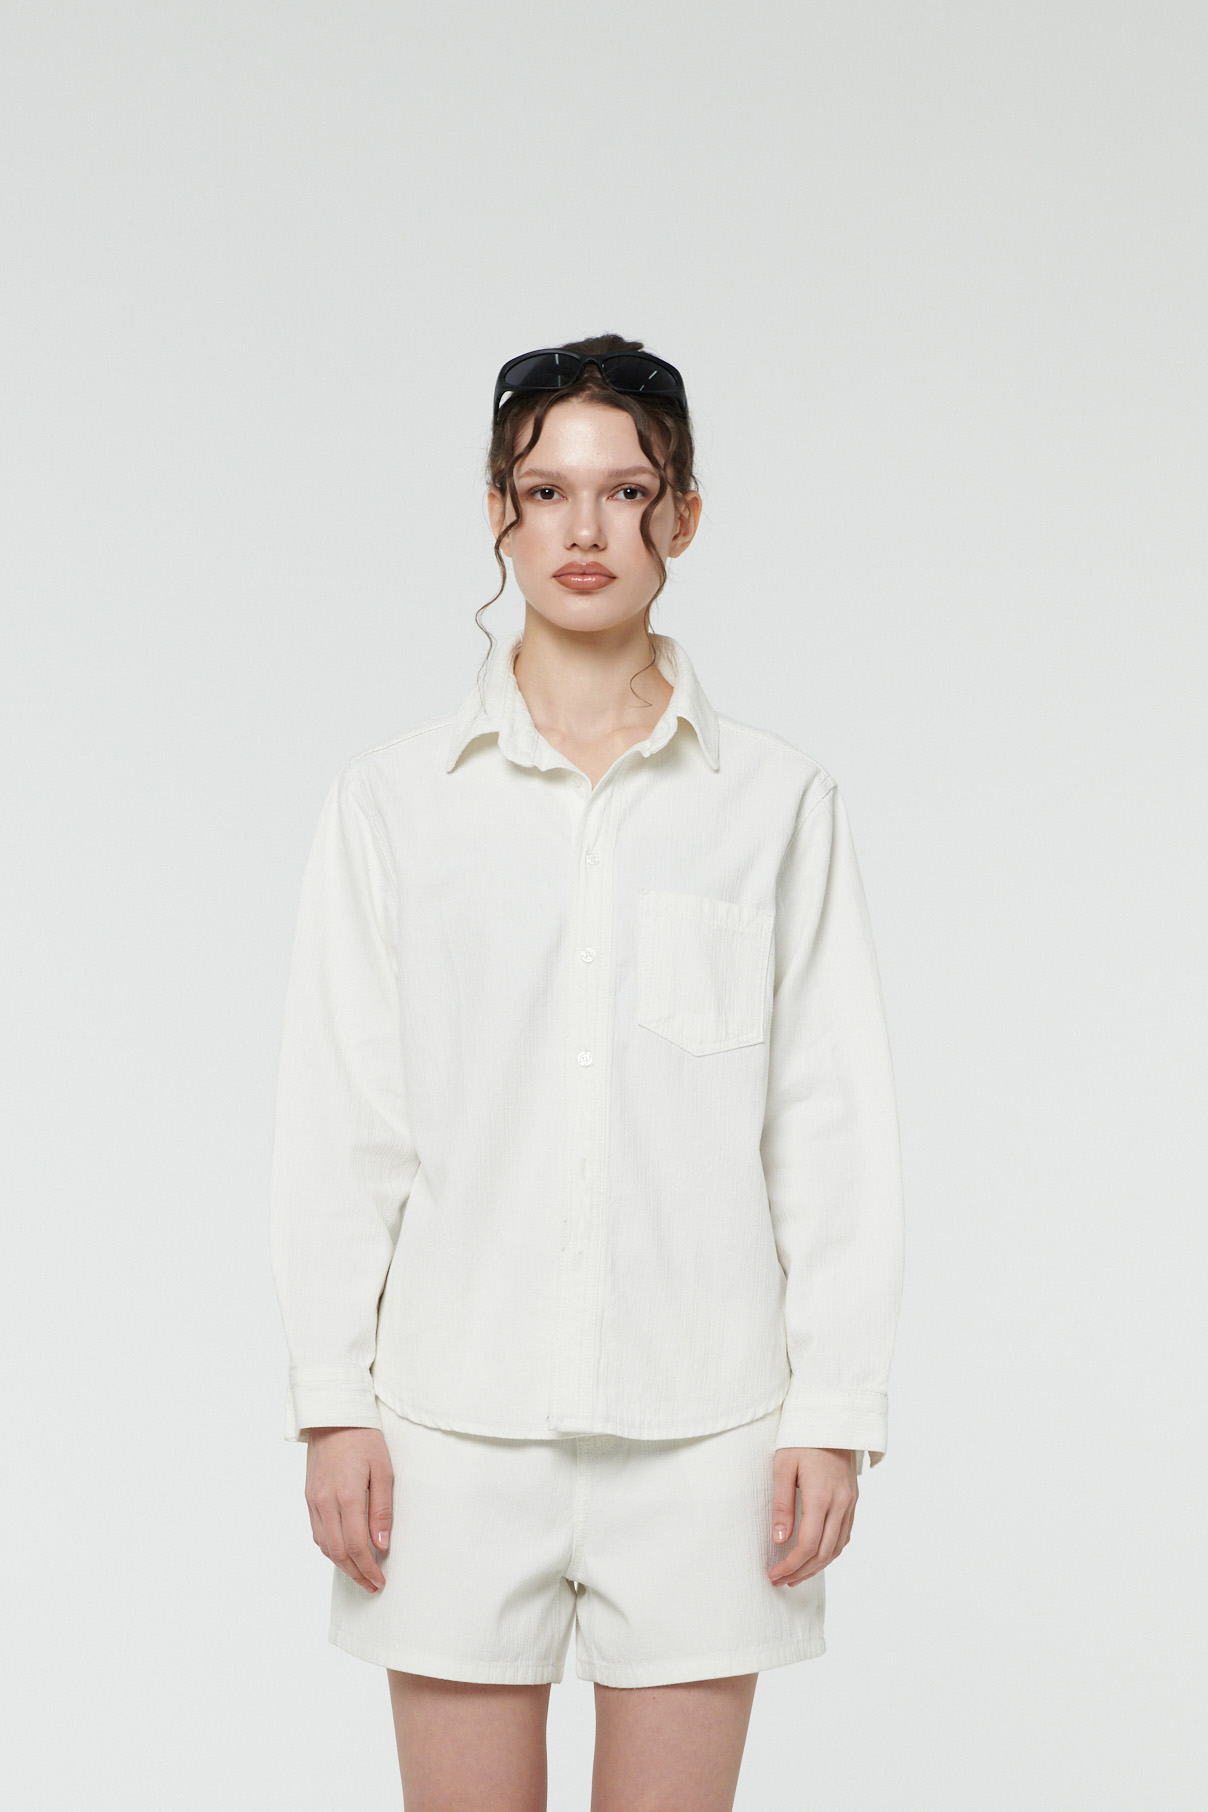 [Refurb] Thomas Shirt / White